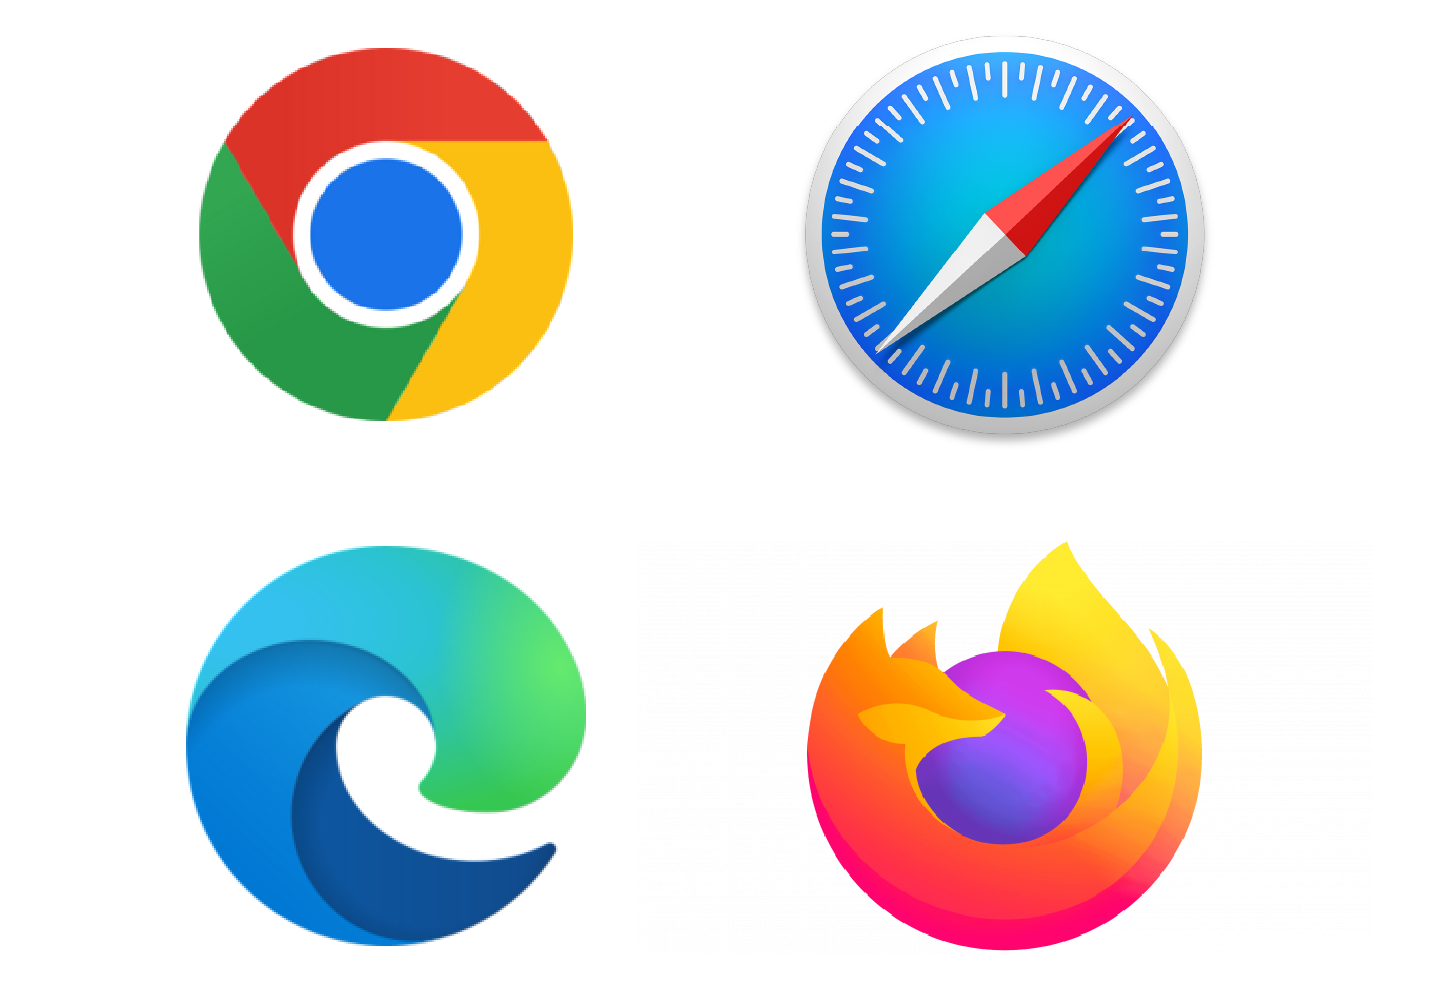 أربعة من الشعارات الرئيسية لمتصفحات الويب وهي Chrome و Safari و Edge و Firefox